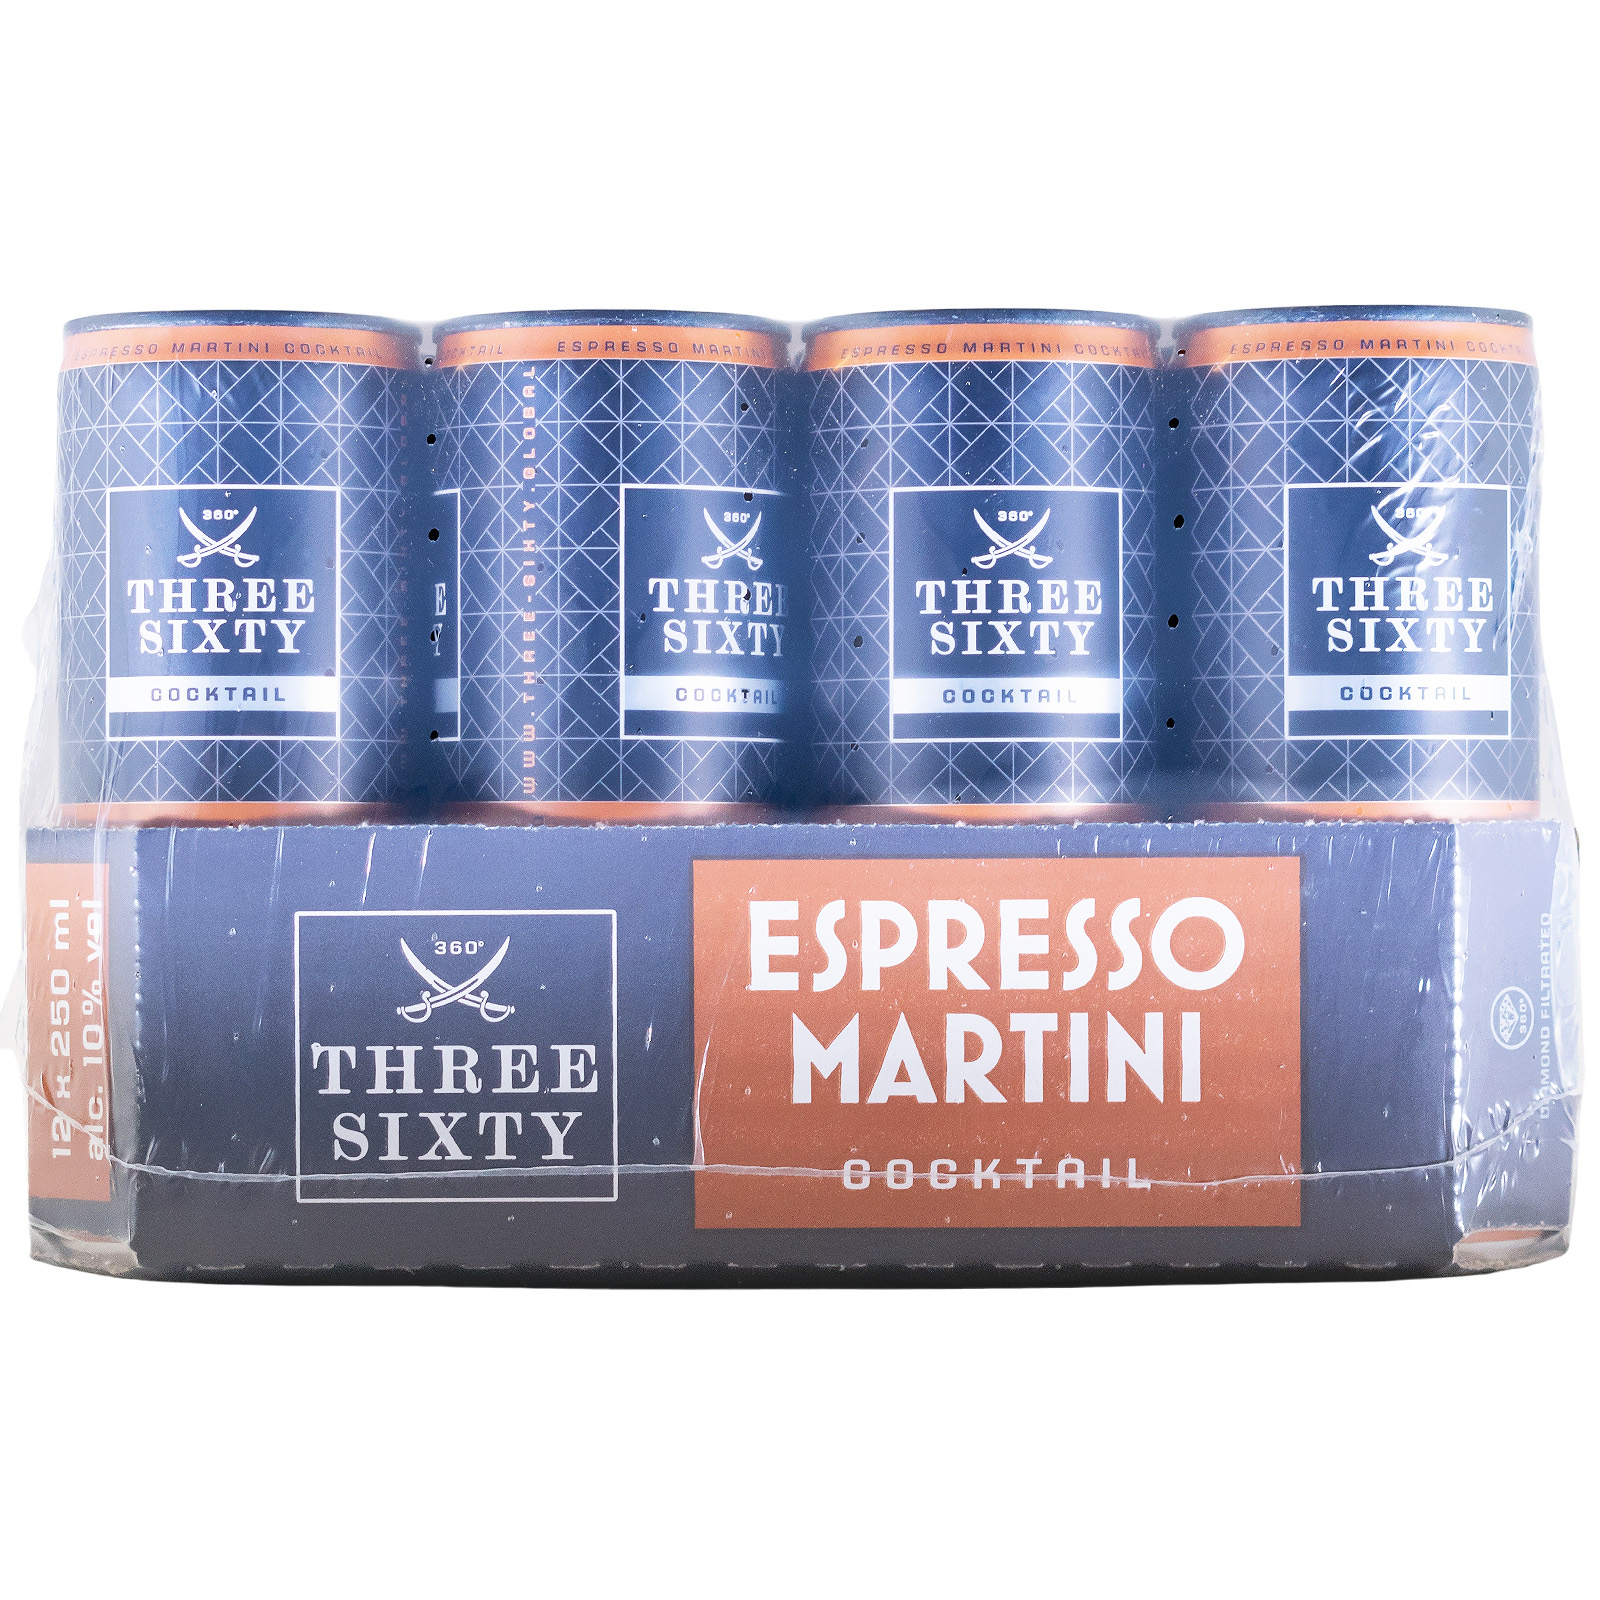 Paket [12 x 0,25L] Three Sixty Espresso Martini - 3L 10% vol